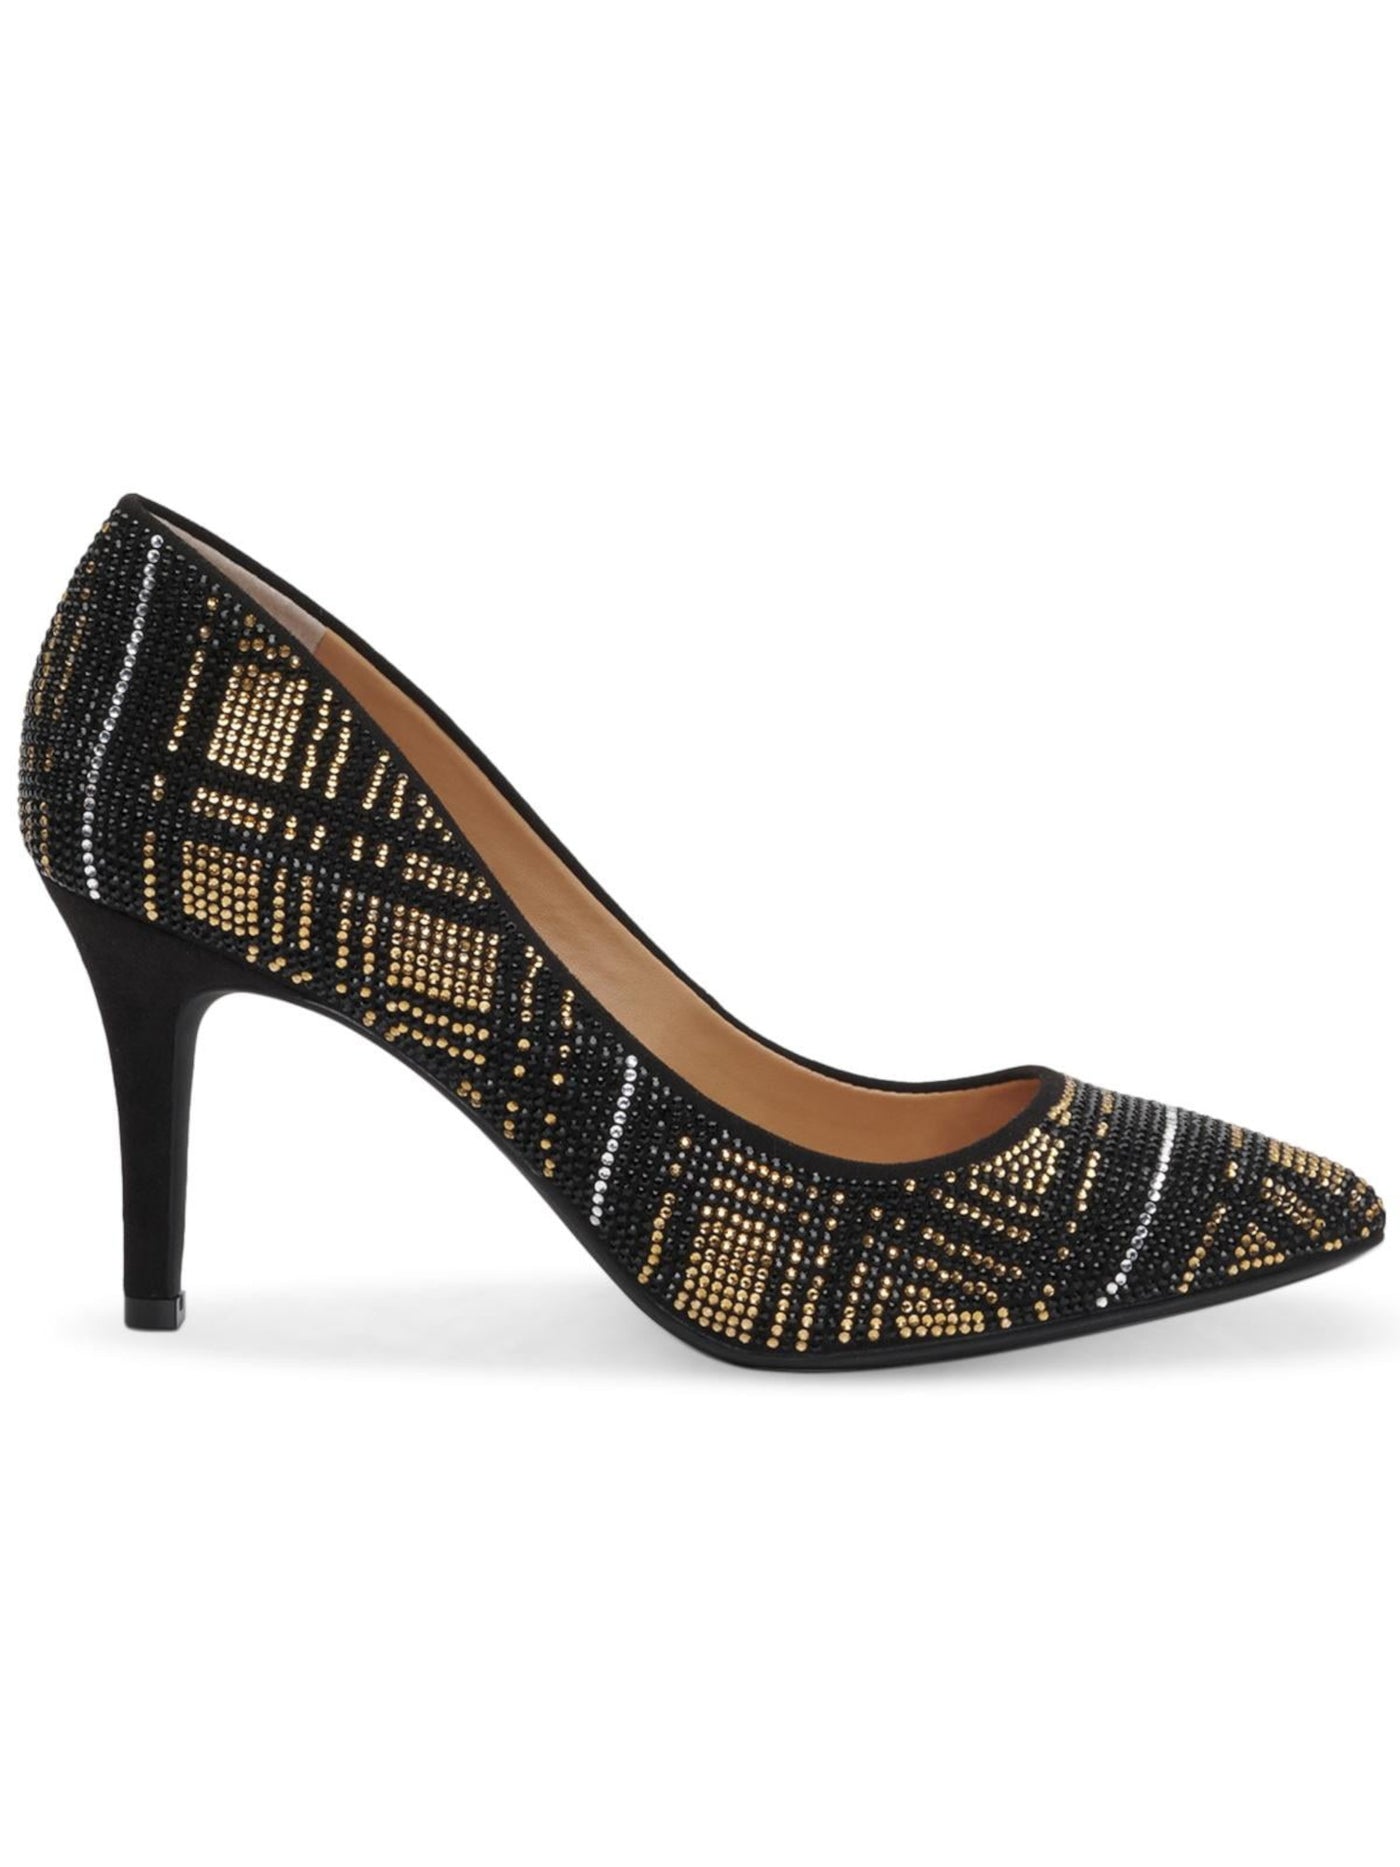 INC Womens Black Plaid Rhinestone Zitah Round Toe Stiletto Slip On Pumps Shoes 6 M